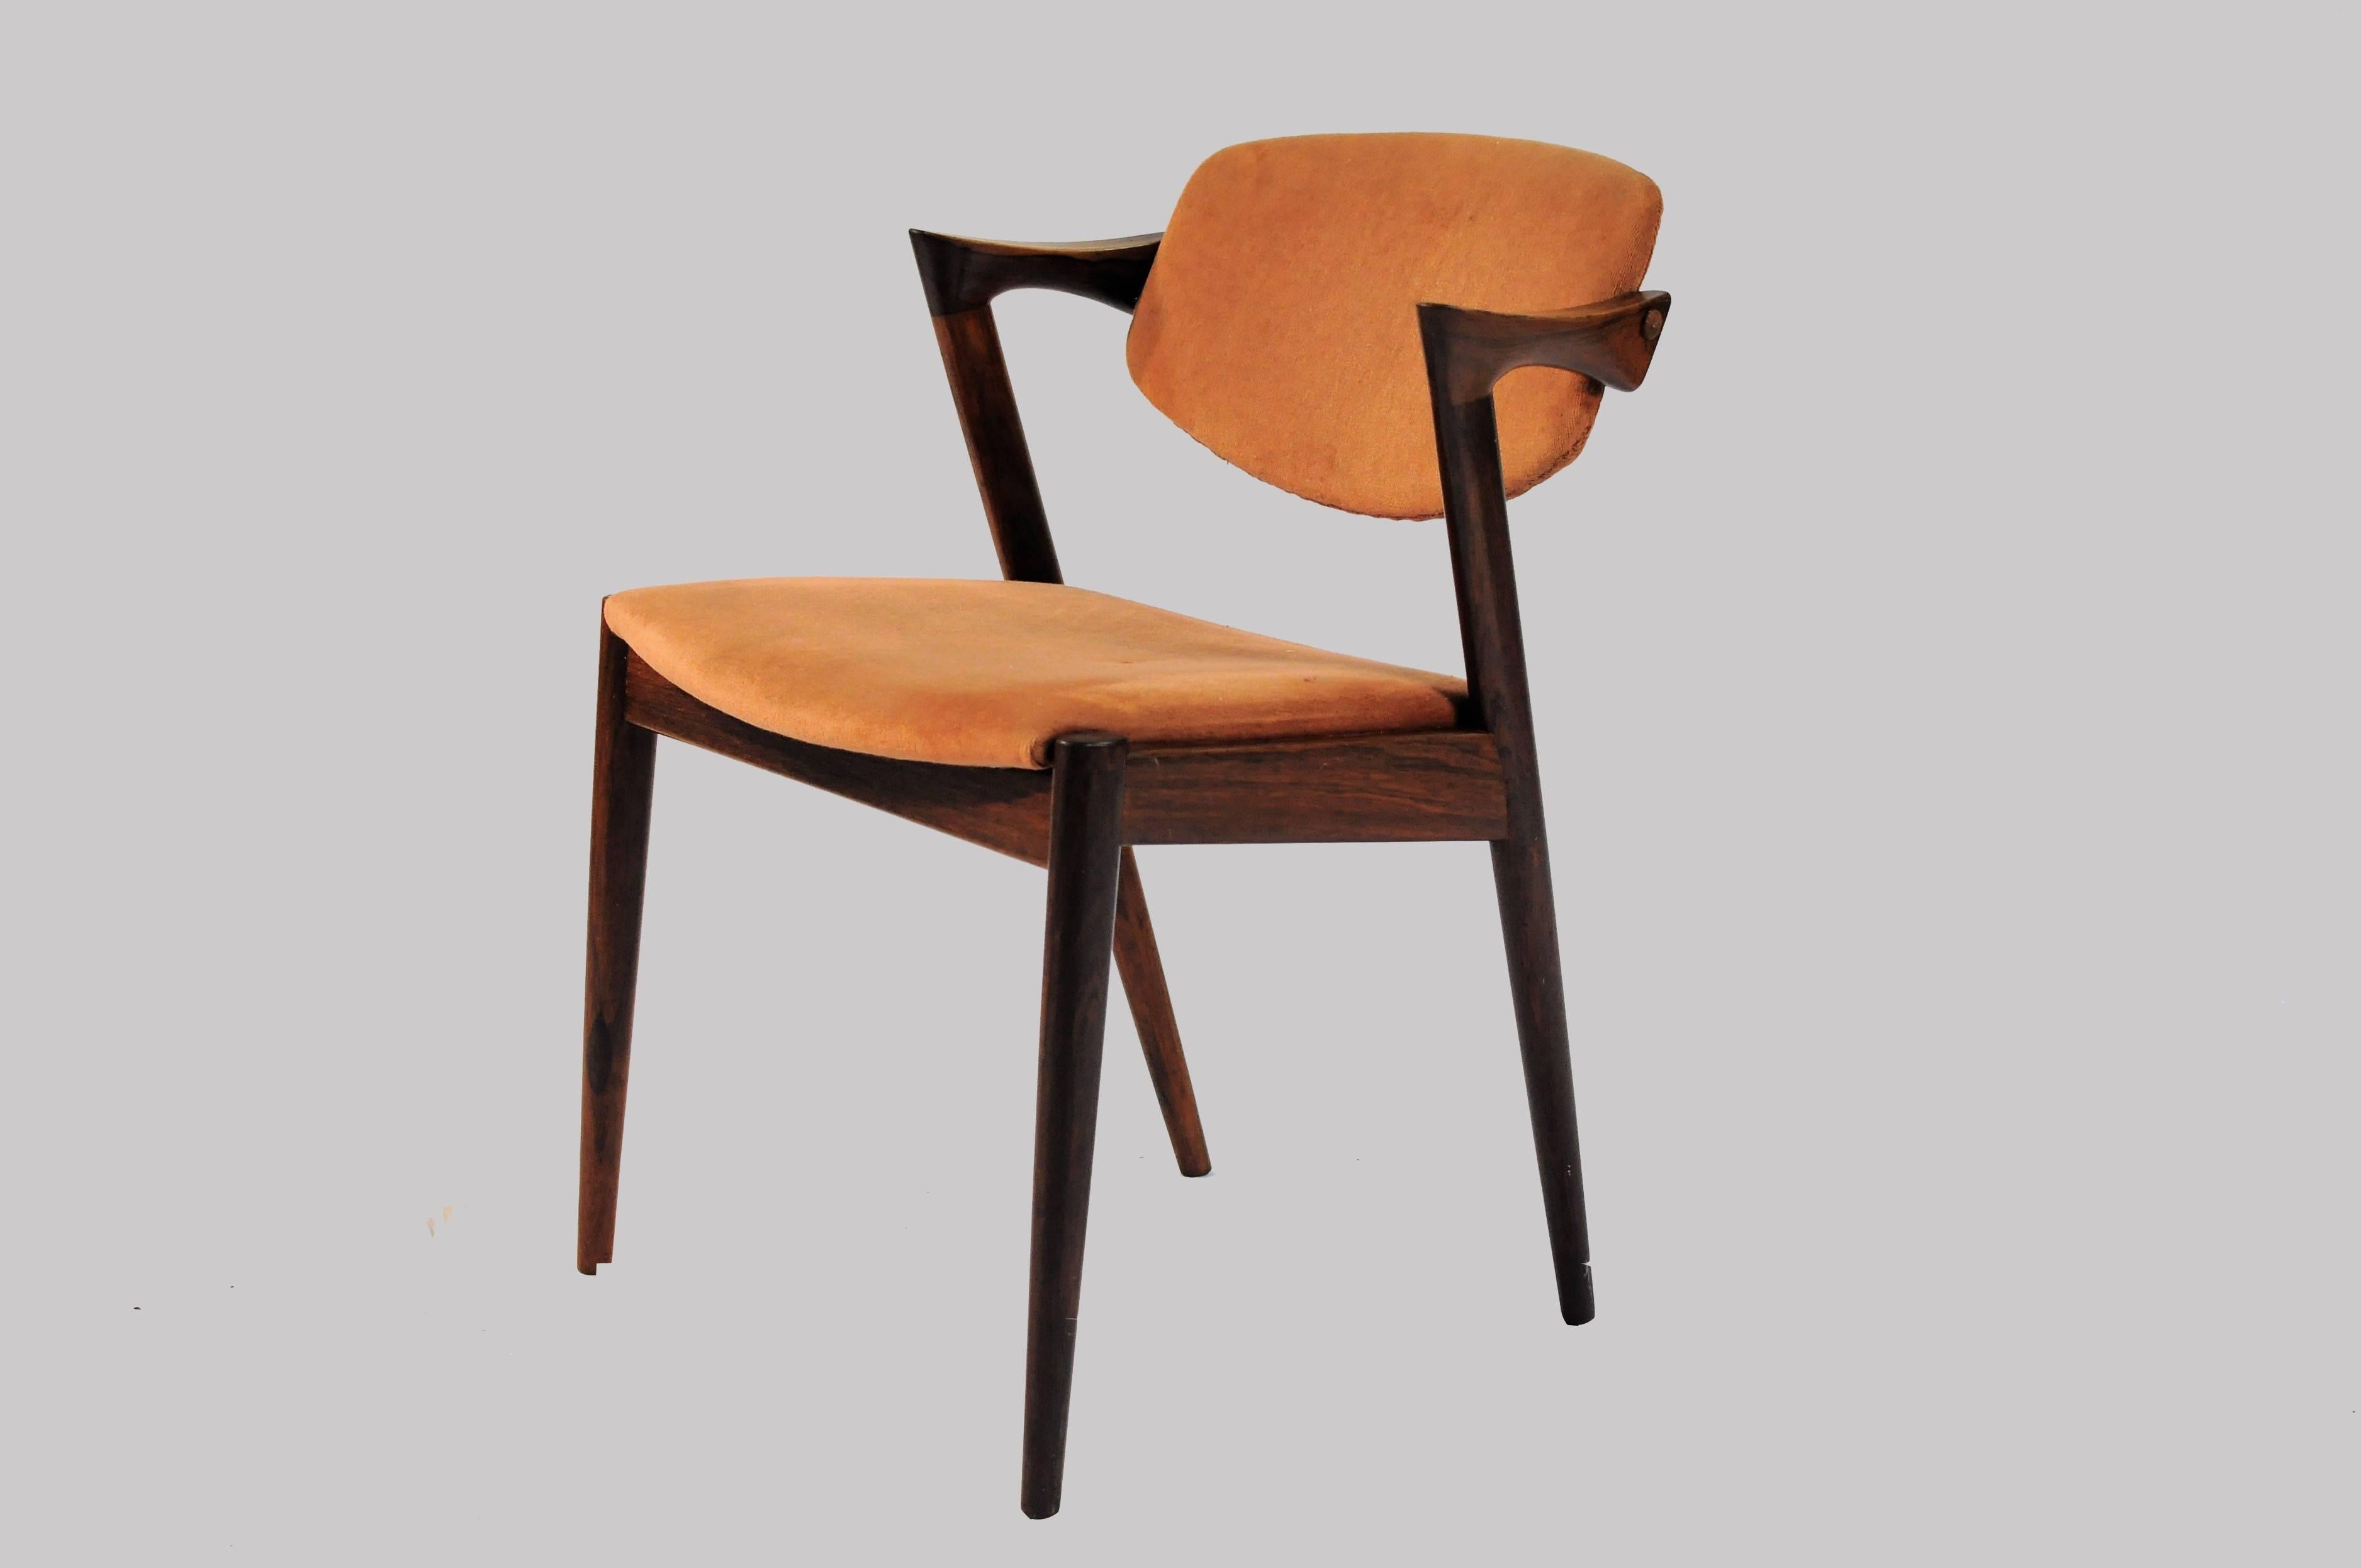 Zwölf vollständig restaurierte Esszimmerstühle aus Palisanderholz aus den 1960er Jahren von Kai Kristiansen für die Schous Møbelfabrik.

Die Stühle haben Kai Kristiansens typisches leichtes und elegantes Design, mit dem sie sich problemlos in die